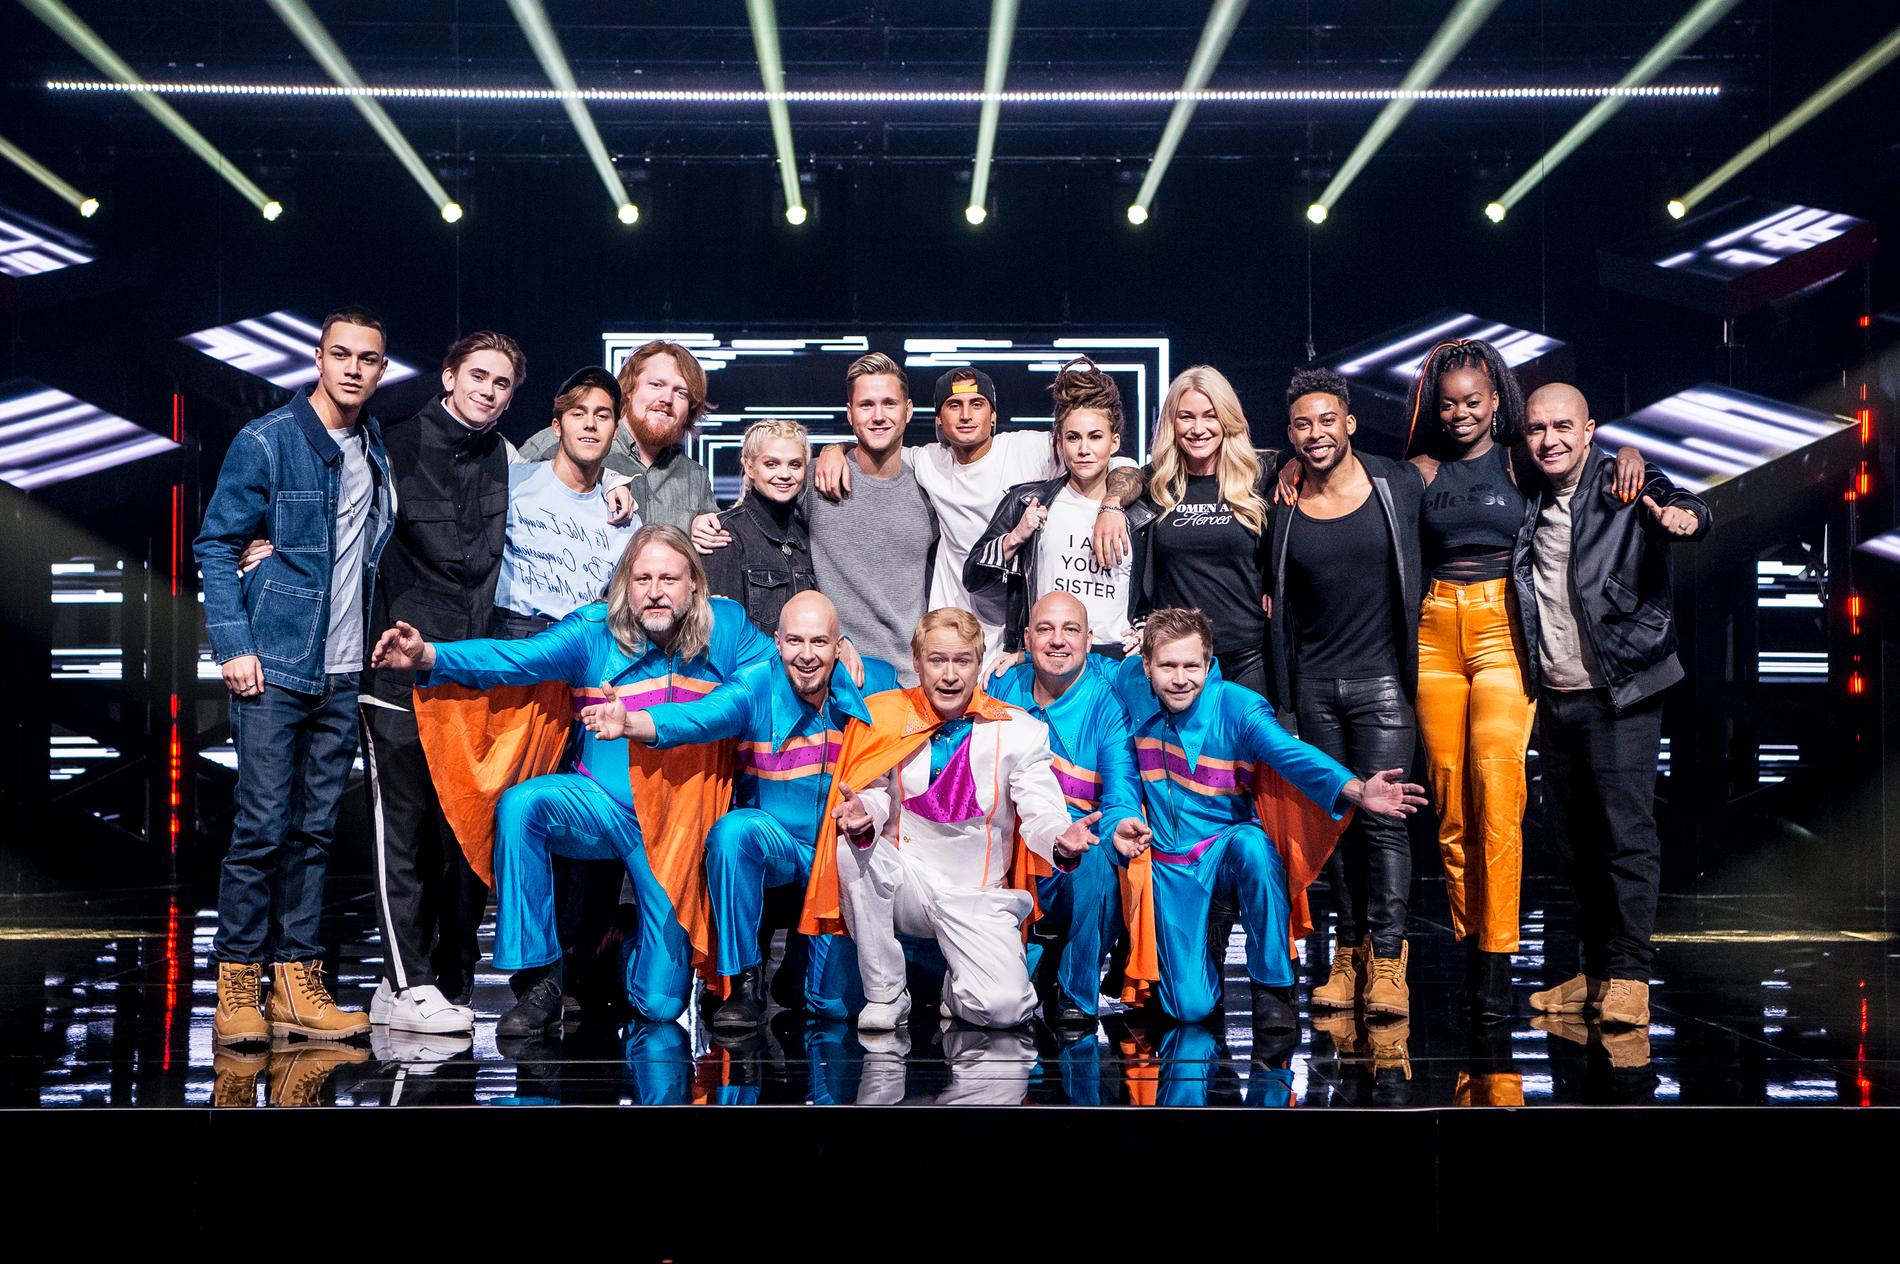 Alla deltagare i årets final av Melodifestivalen. 